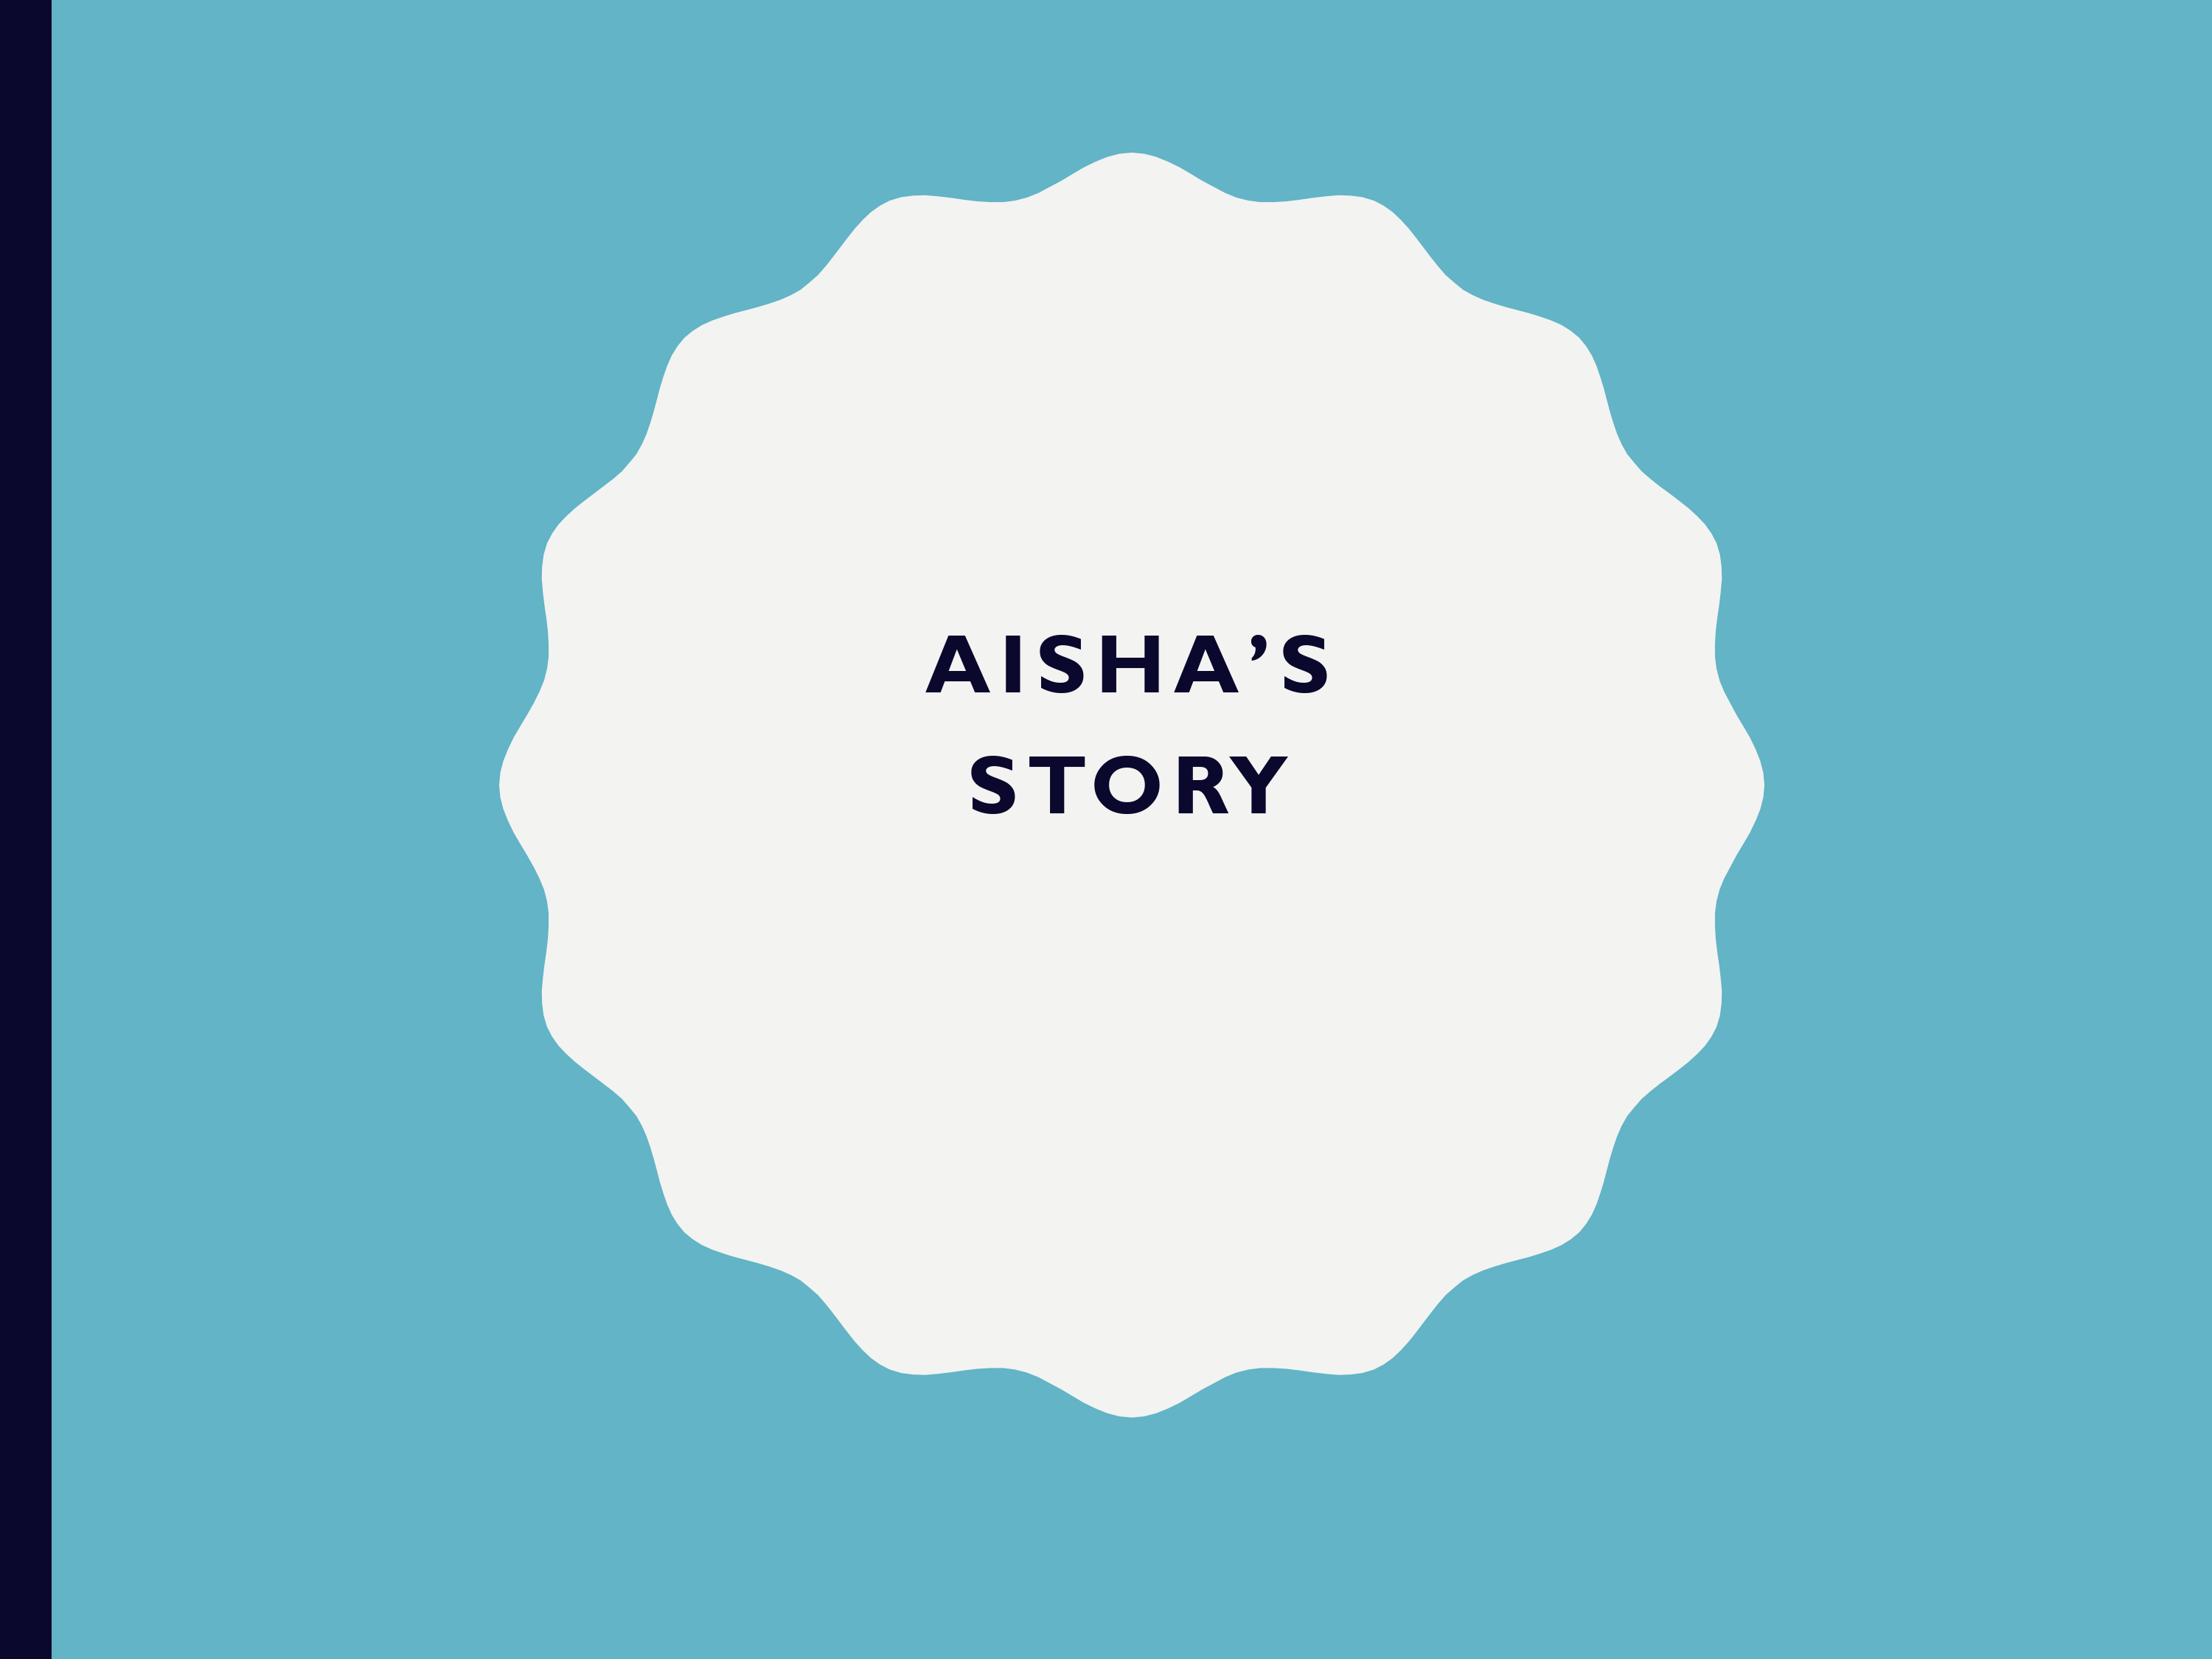 AISHA'S STORY